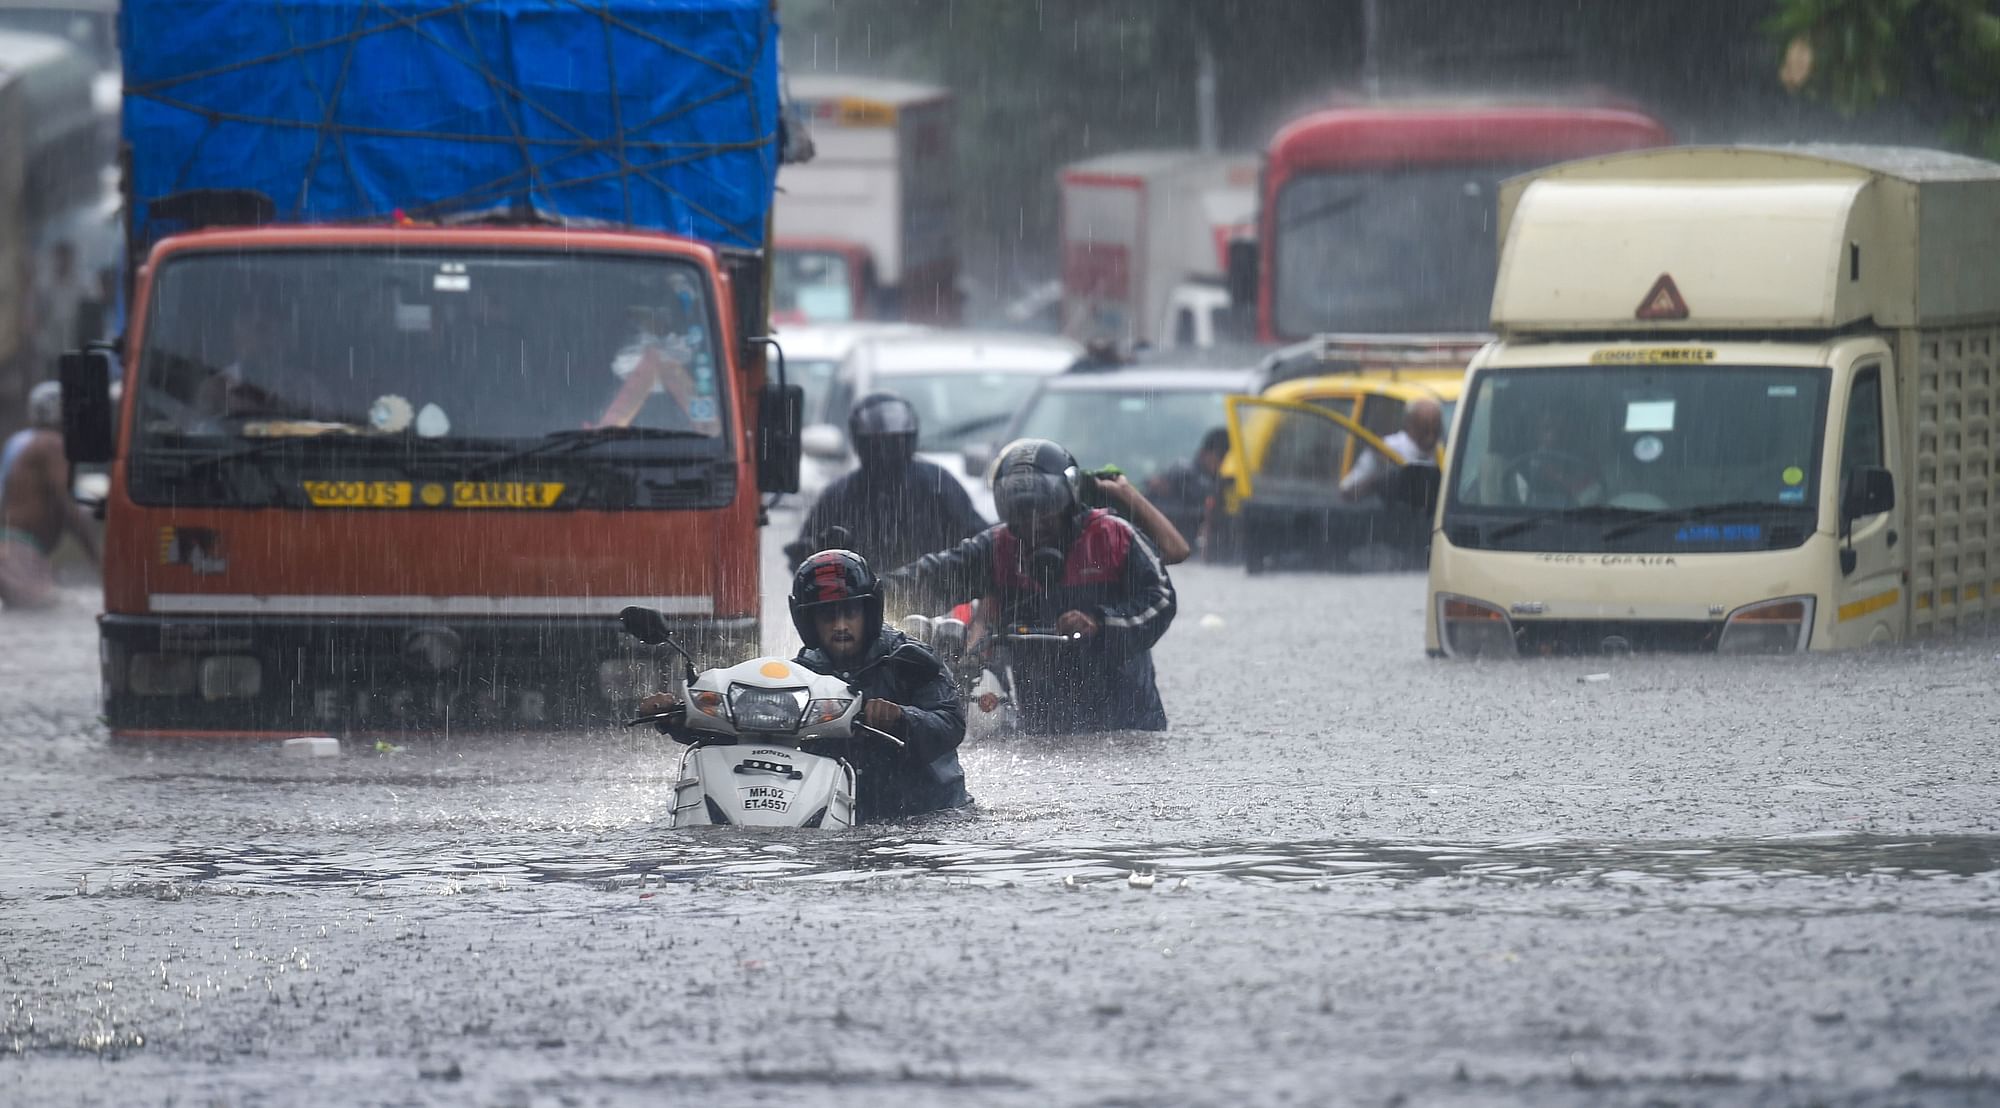 Mumbai Rains: Heavy rainfall on Wednesday caused waterlogging in different parts of Mumbai.